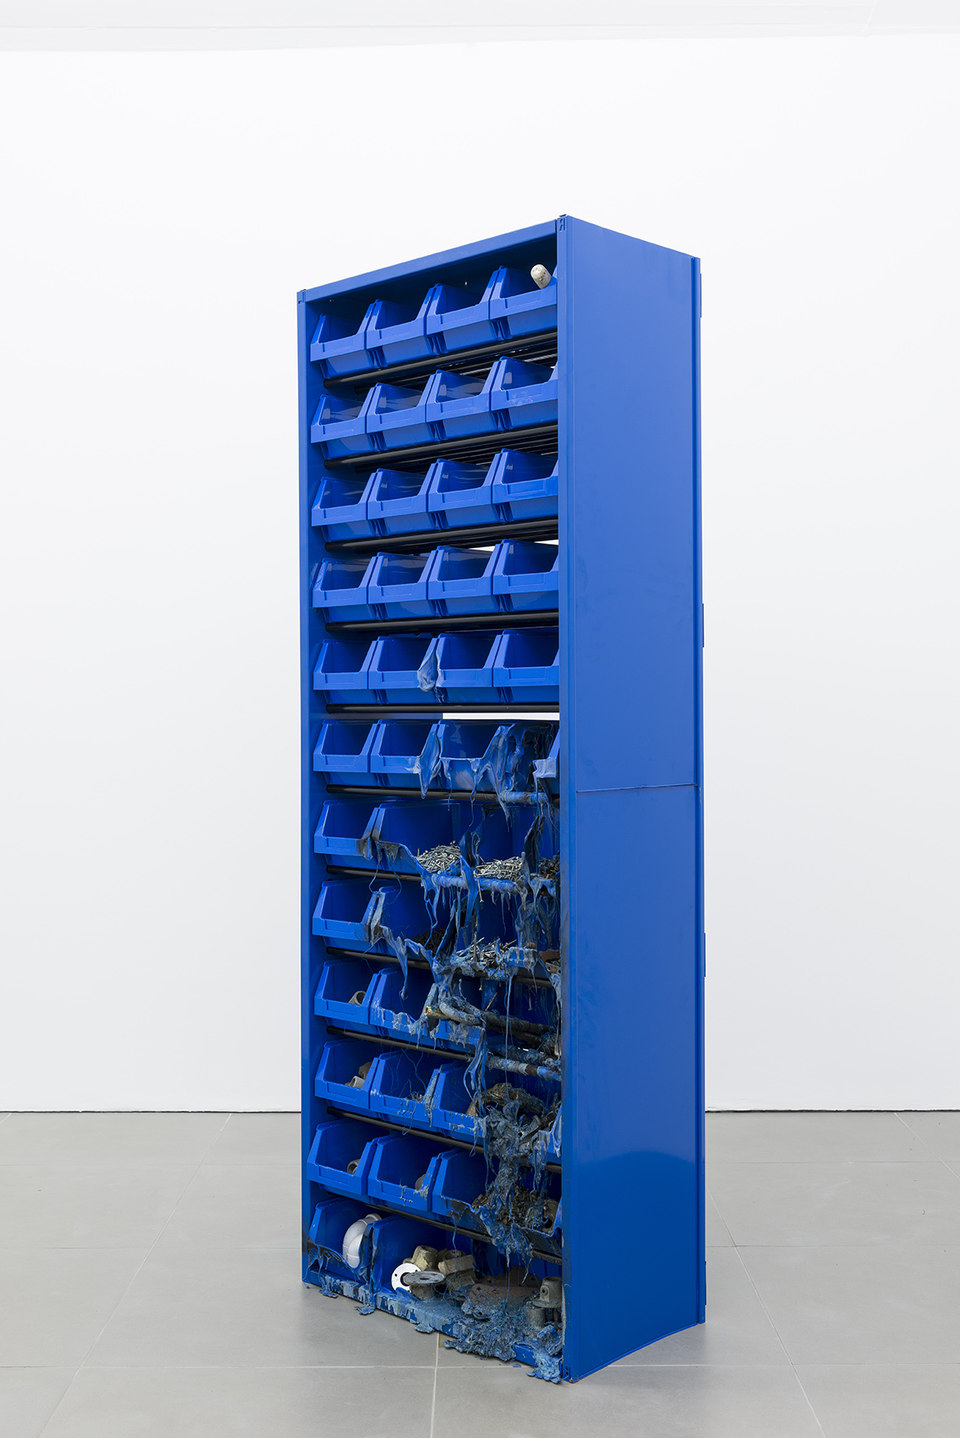 Matias Faldbakken, Parts Cabinet, 2013, Cell Project Space